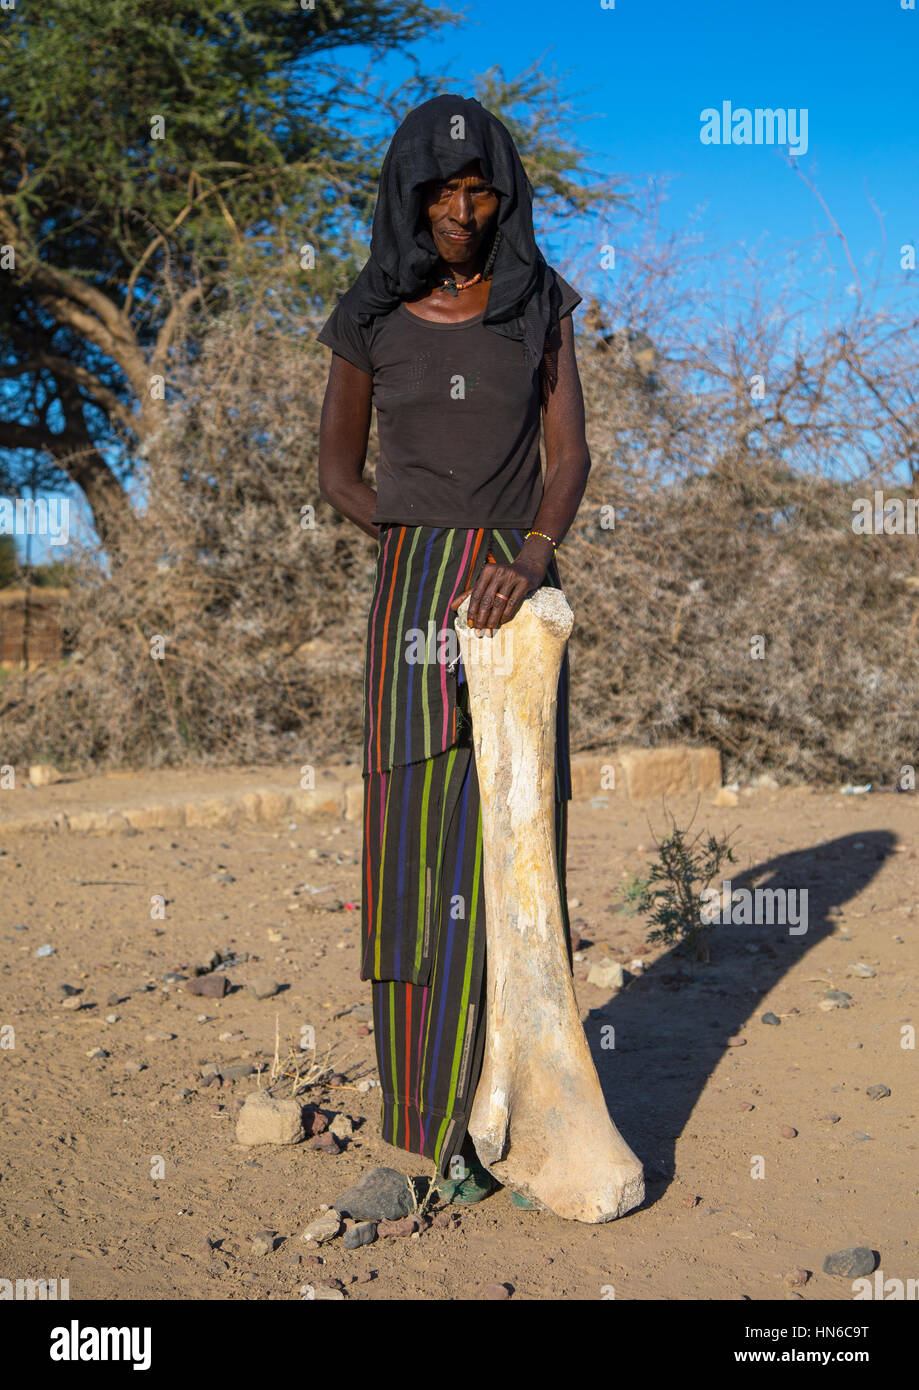 Afar tribe woman with an elephant femur bone found in a dry river, Afar region, Chifra, Ethiopia Stock Photo